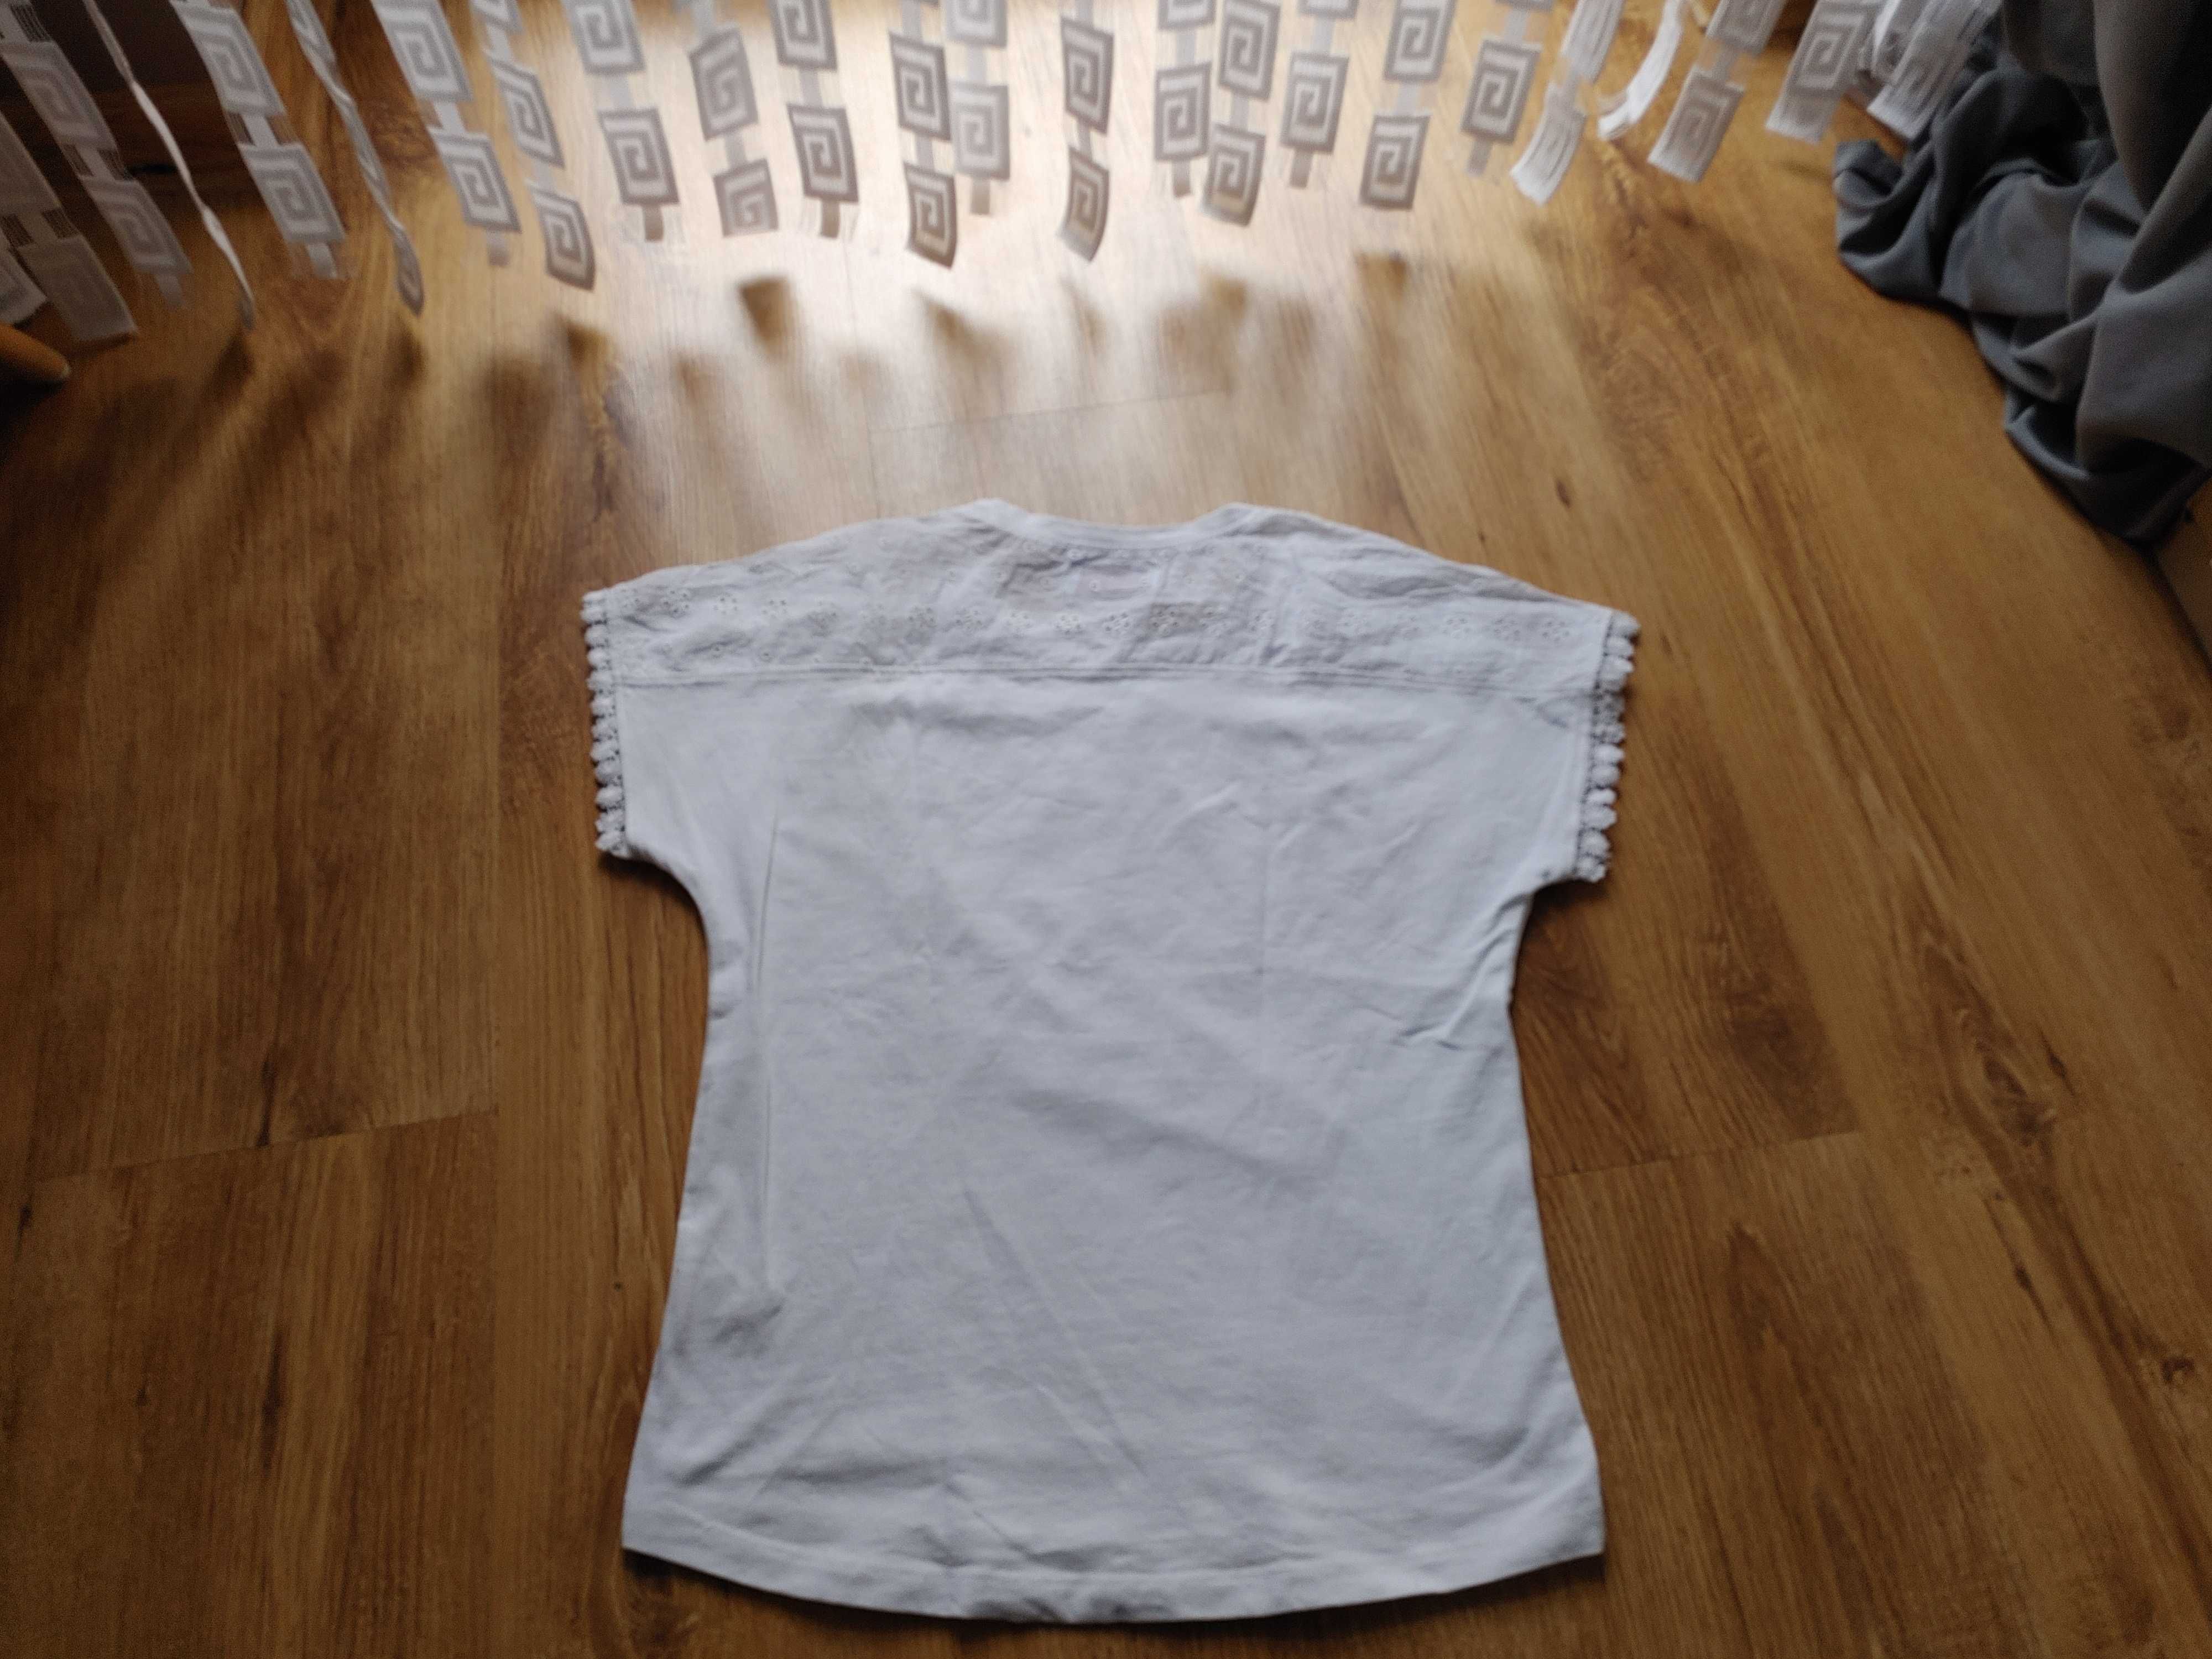 5 10 15 białą śliczna bluzeczka 146cm 8l+ idealny